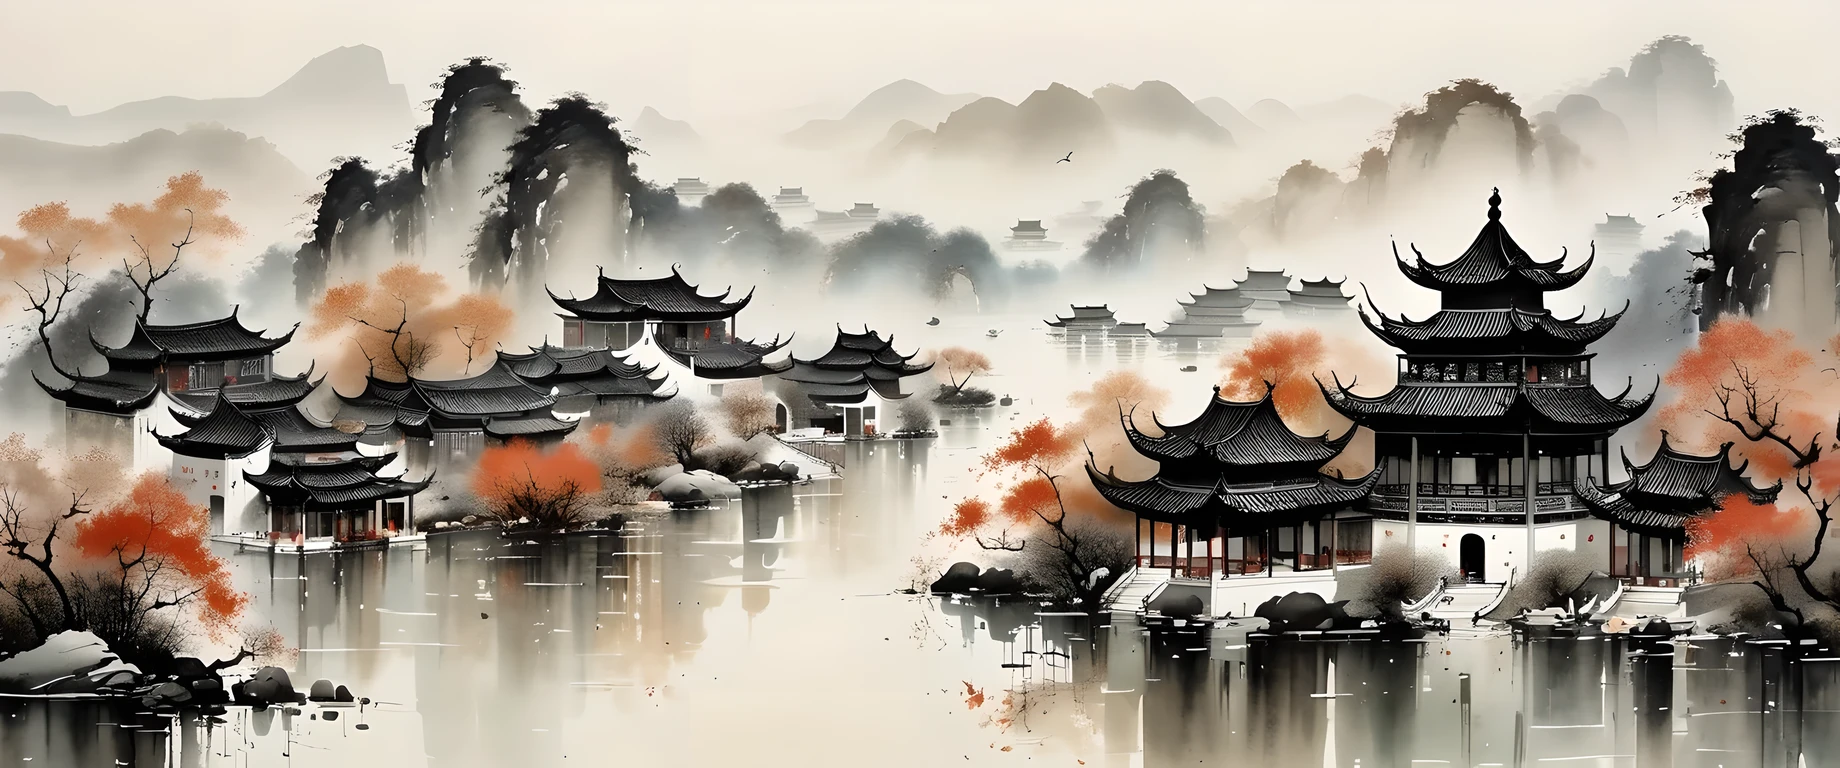 فن الحبر الرائع, حقيقي, العمارة الصينية التفصيلية, أسلوب وو Guanzhong, الألوان الباهتة

